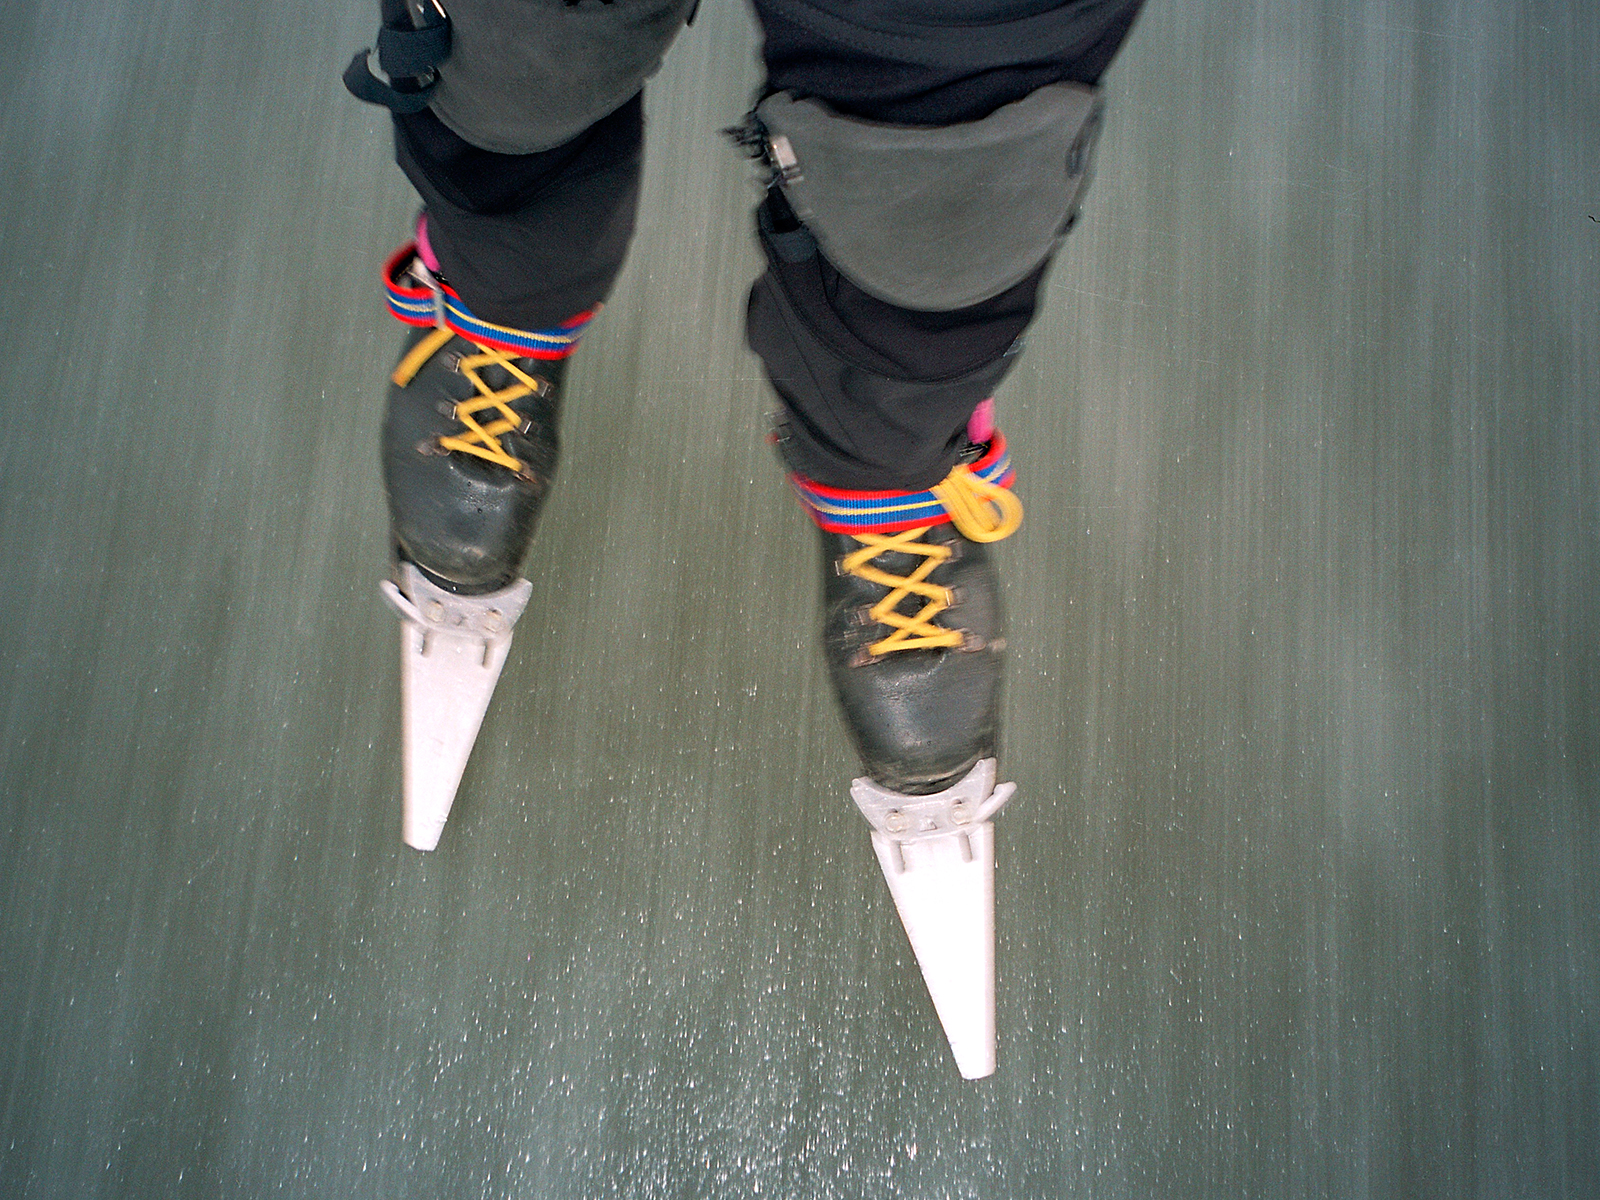 Fixed-heel+skates